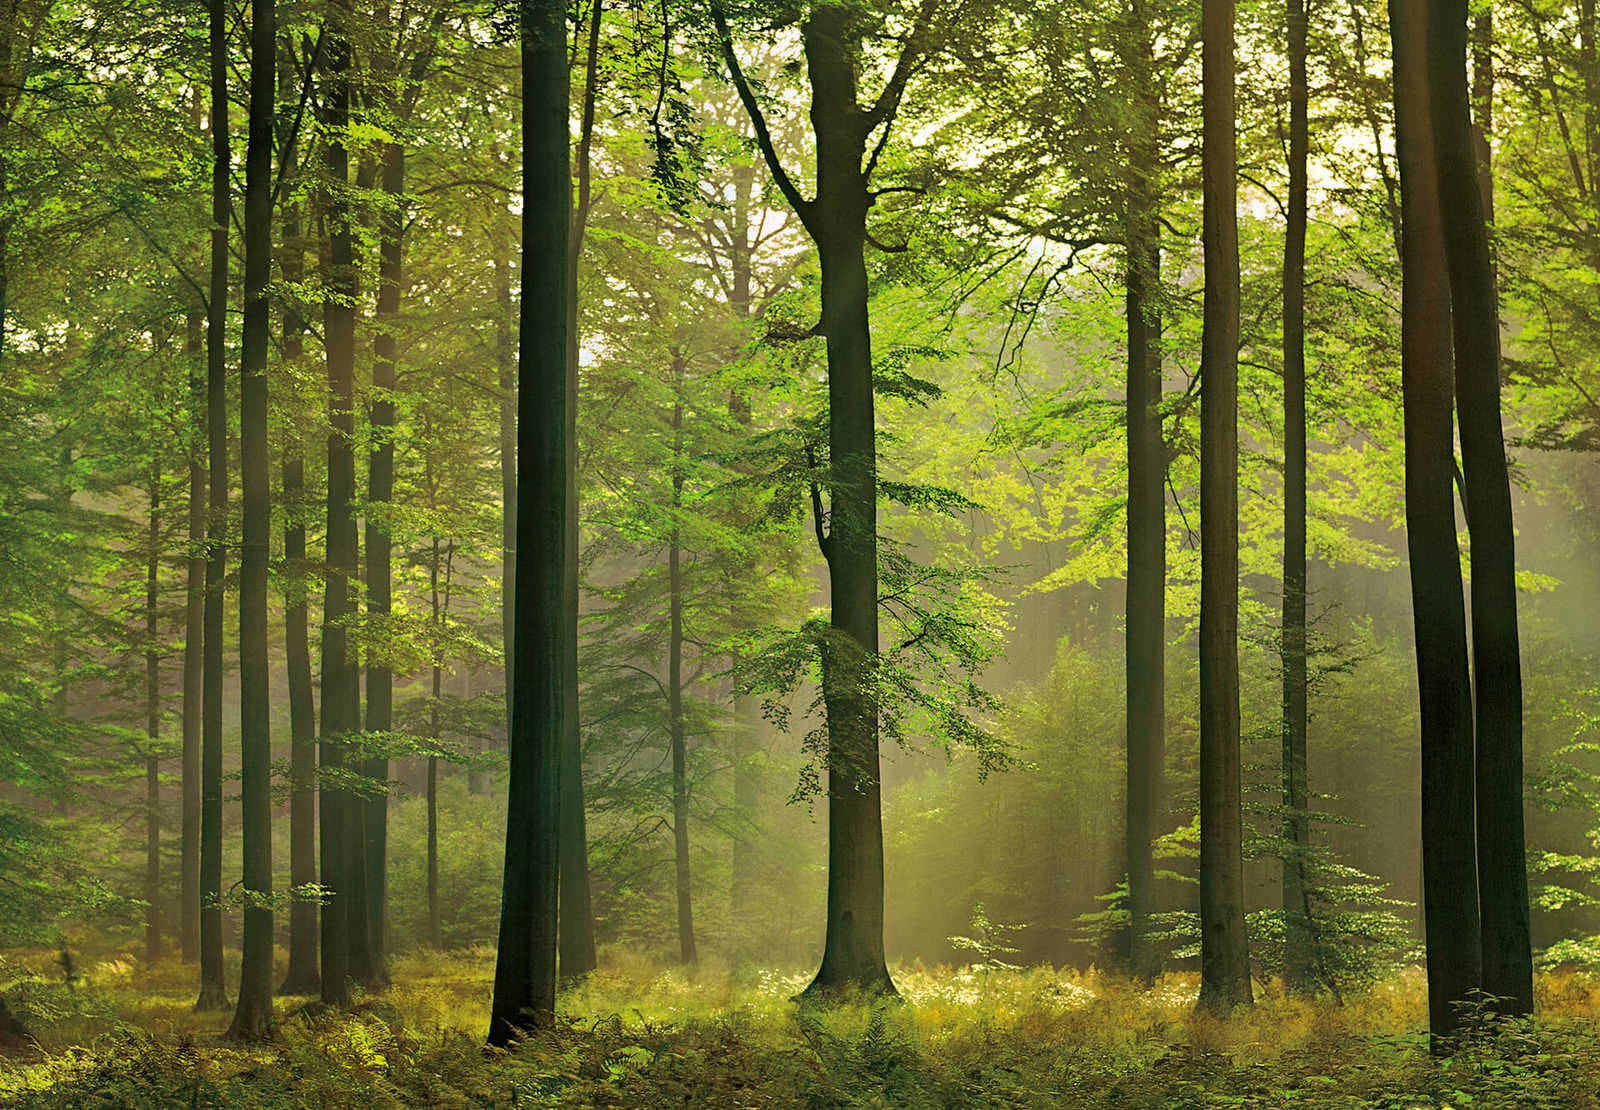             Wald Fototapete im herbstlichen Sonnenlicht – Grün
        